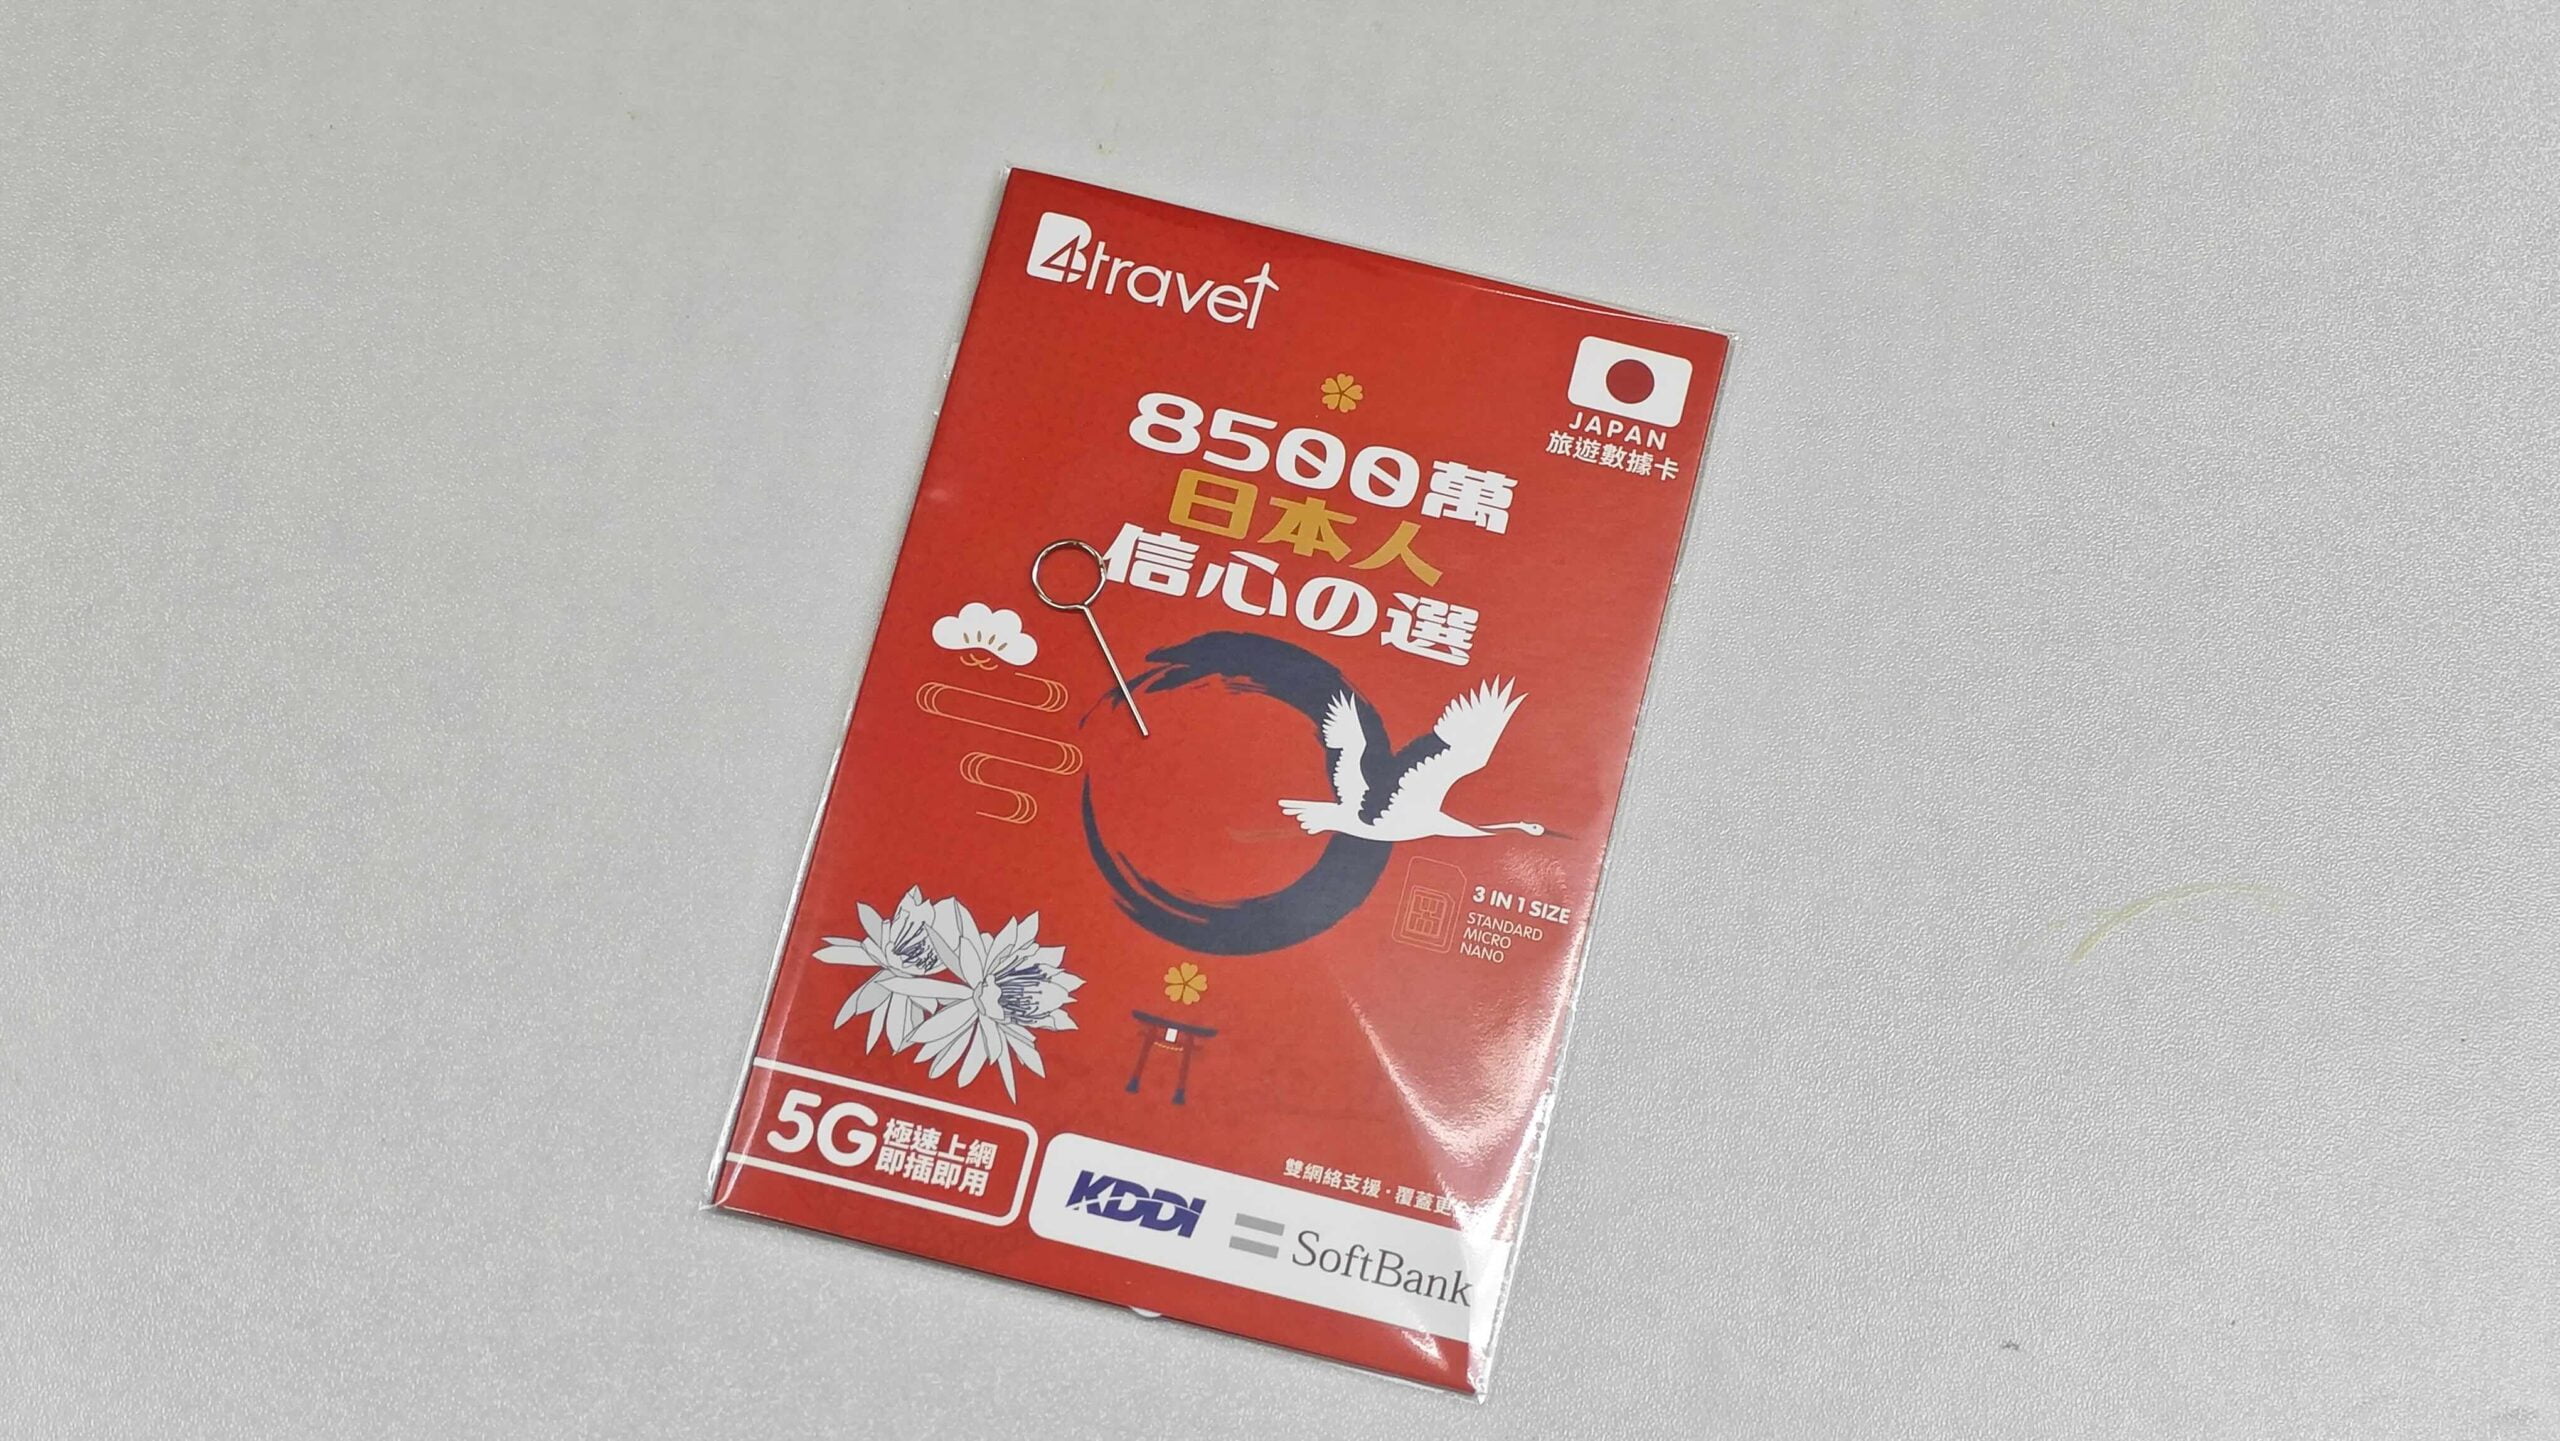 【售價】B4Travel SoftBank 5G 日本高速上網卡，六月底到期版減價至 